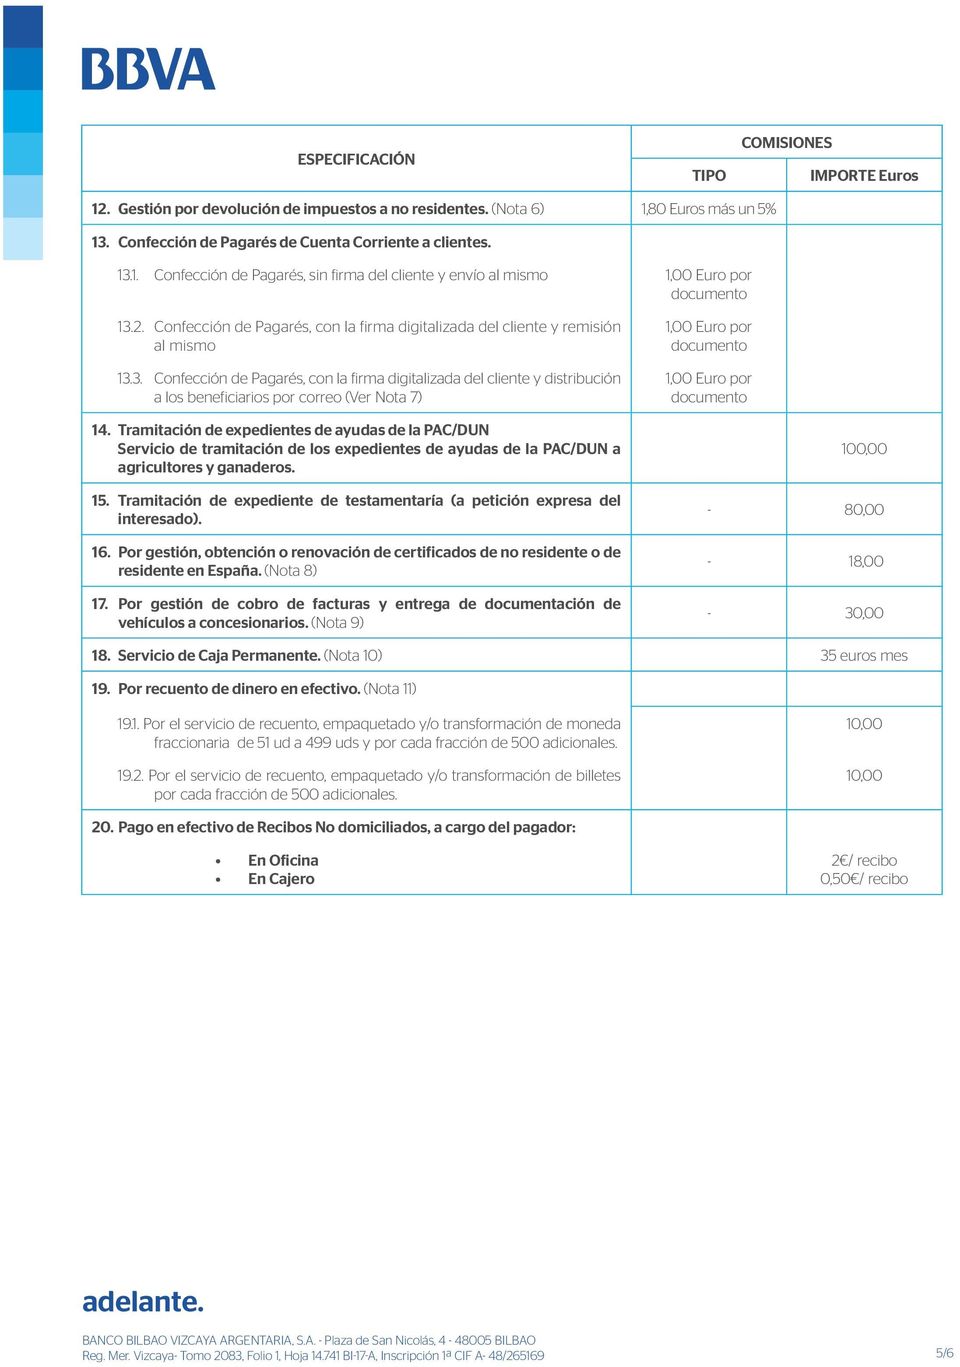 3. Confección de Pagarés, con la firma digitalizada del cliente y distribución a los beneficiarios por correo (Ver Nota 7) 1,00 Euro por documento 1,00 Euro por documento 14.